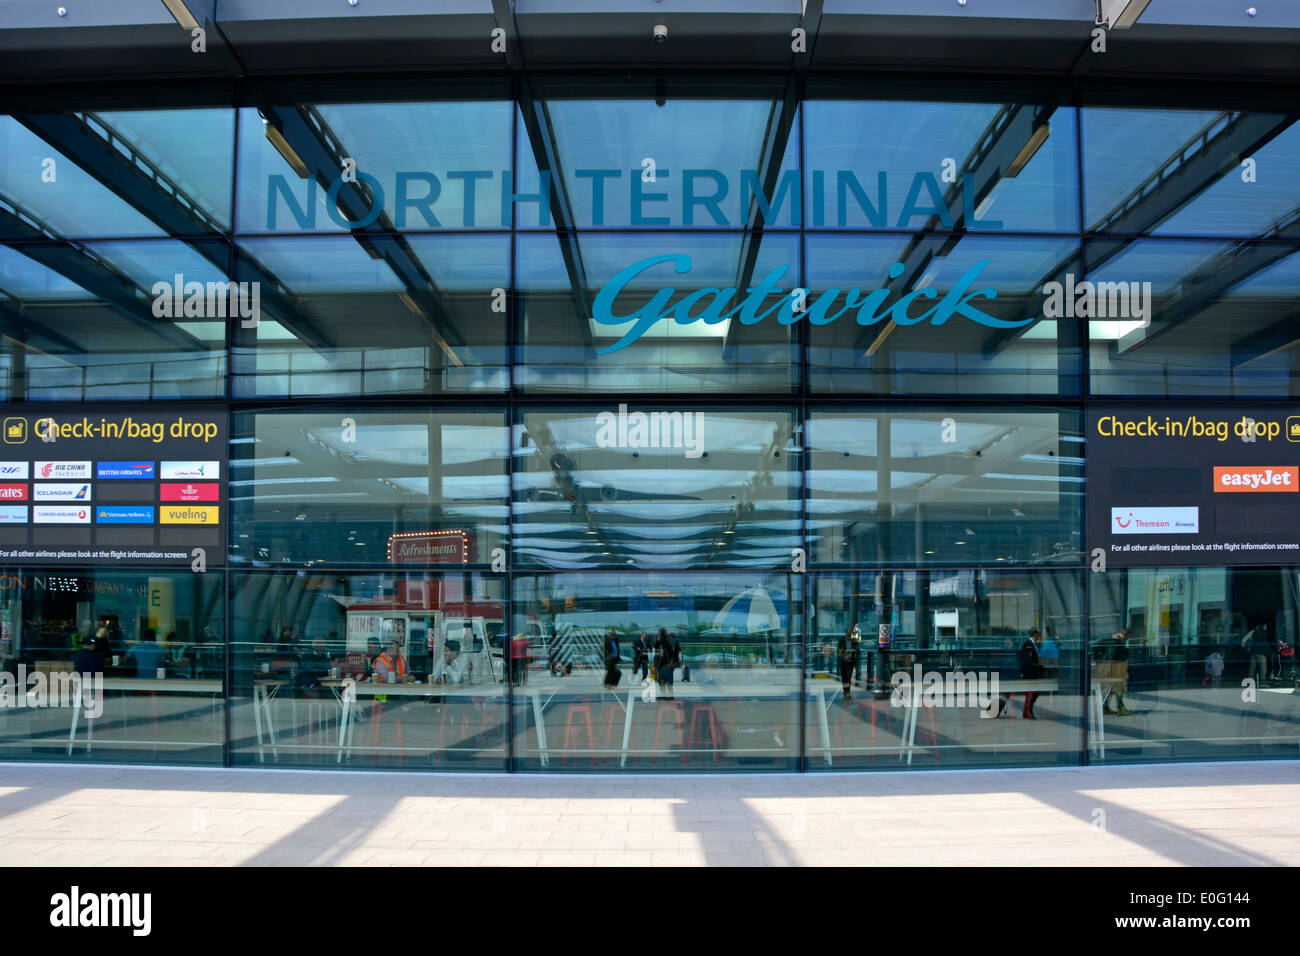 Entrata del Terminal Nord dell'Aeroporto di Gatwick Londra e cartello passeggeri all'interno visti attraverso i riflessi parete di vetro traslucido Crawley West Sussex Inghilterra Regno Unito Foto Stock